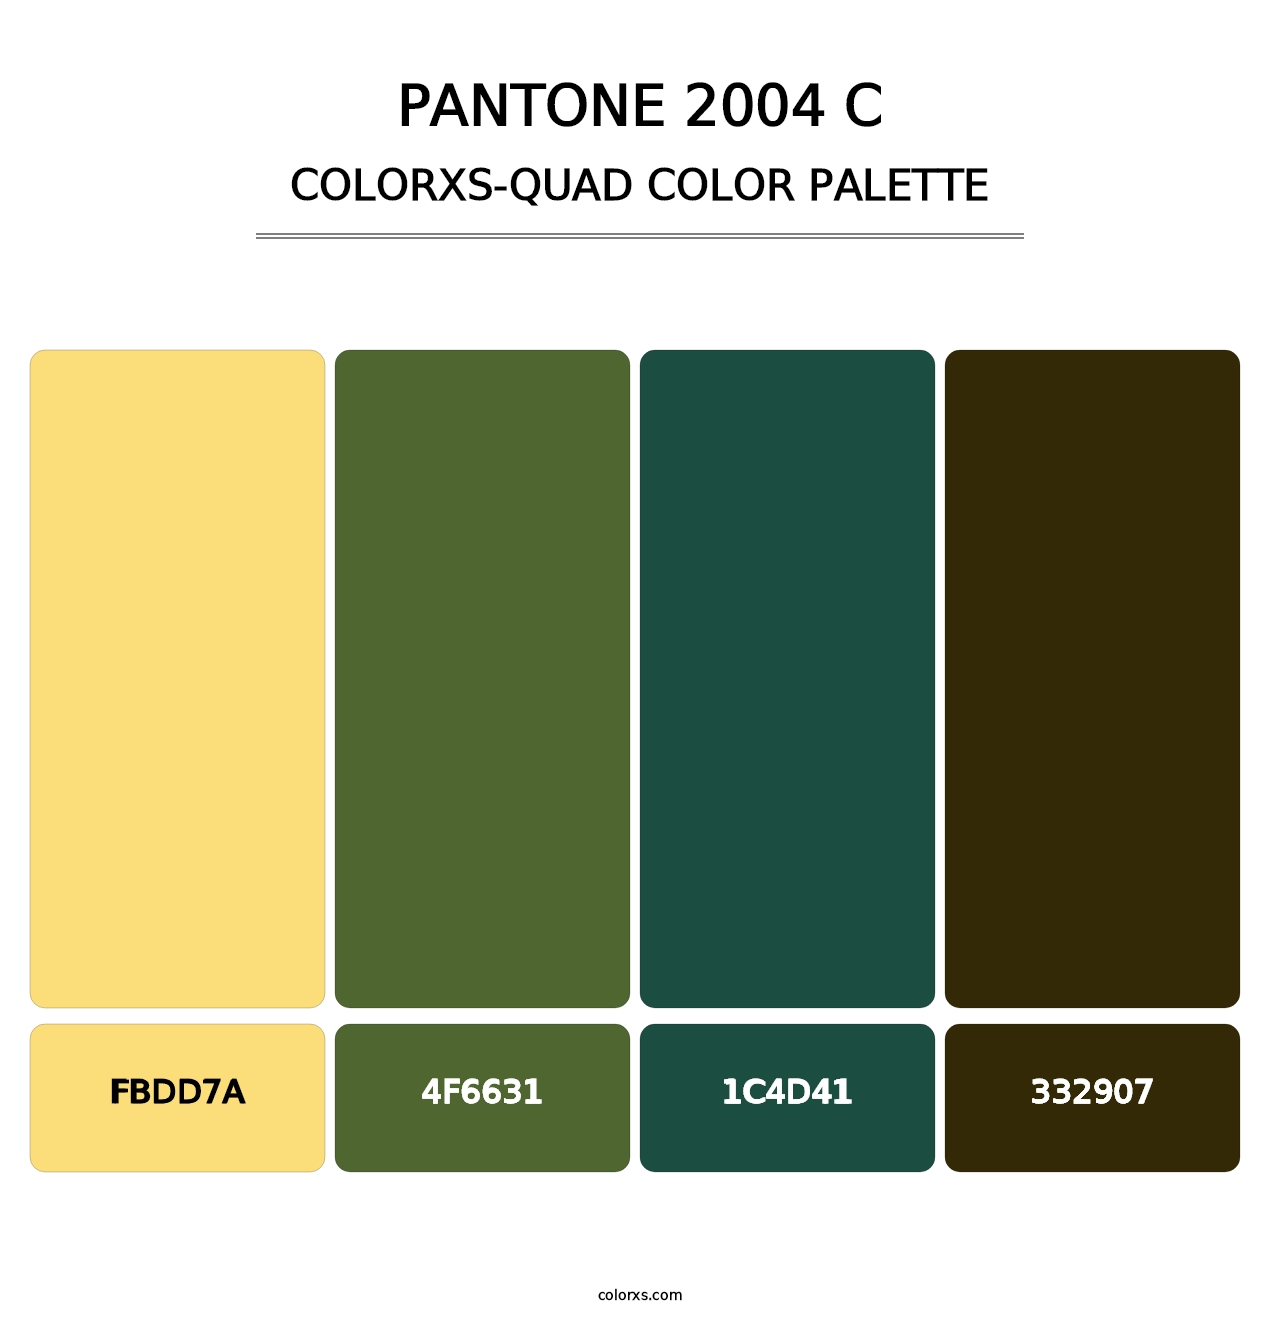 PANTONE 2004 C - Colorxs Quad Palette